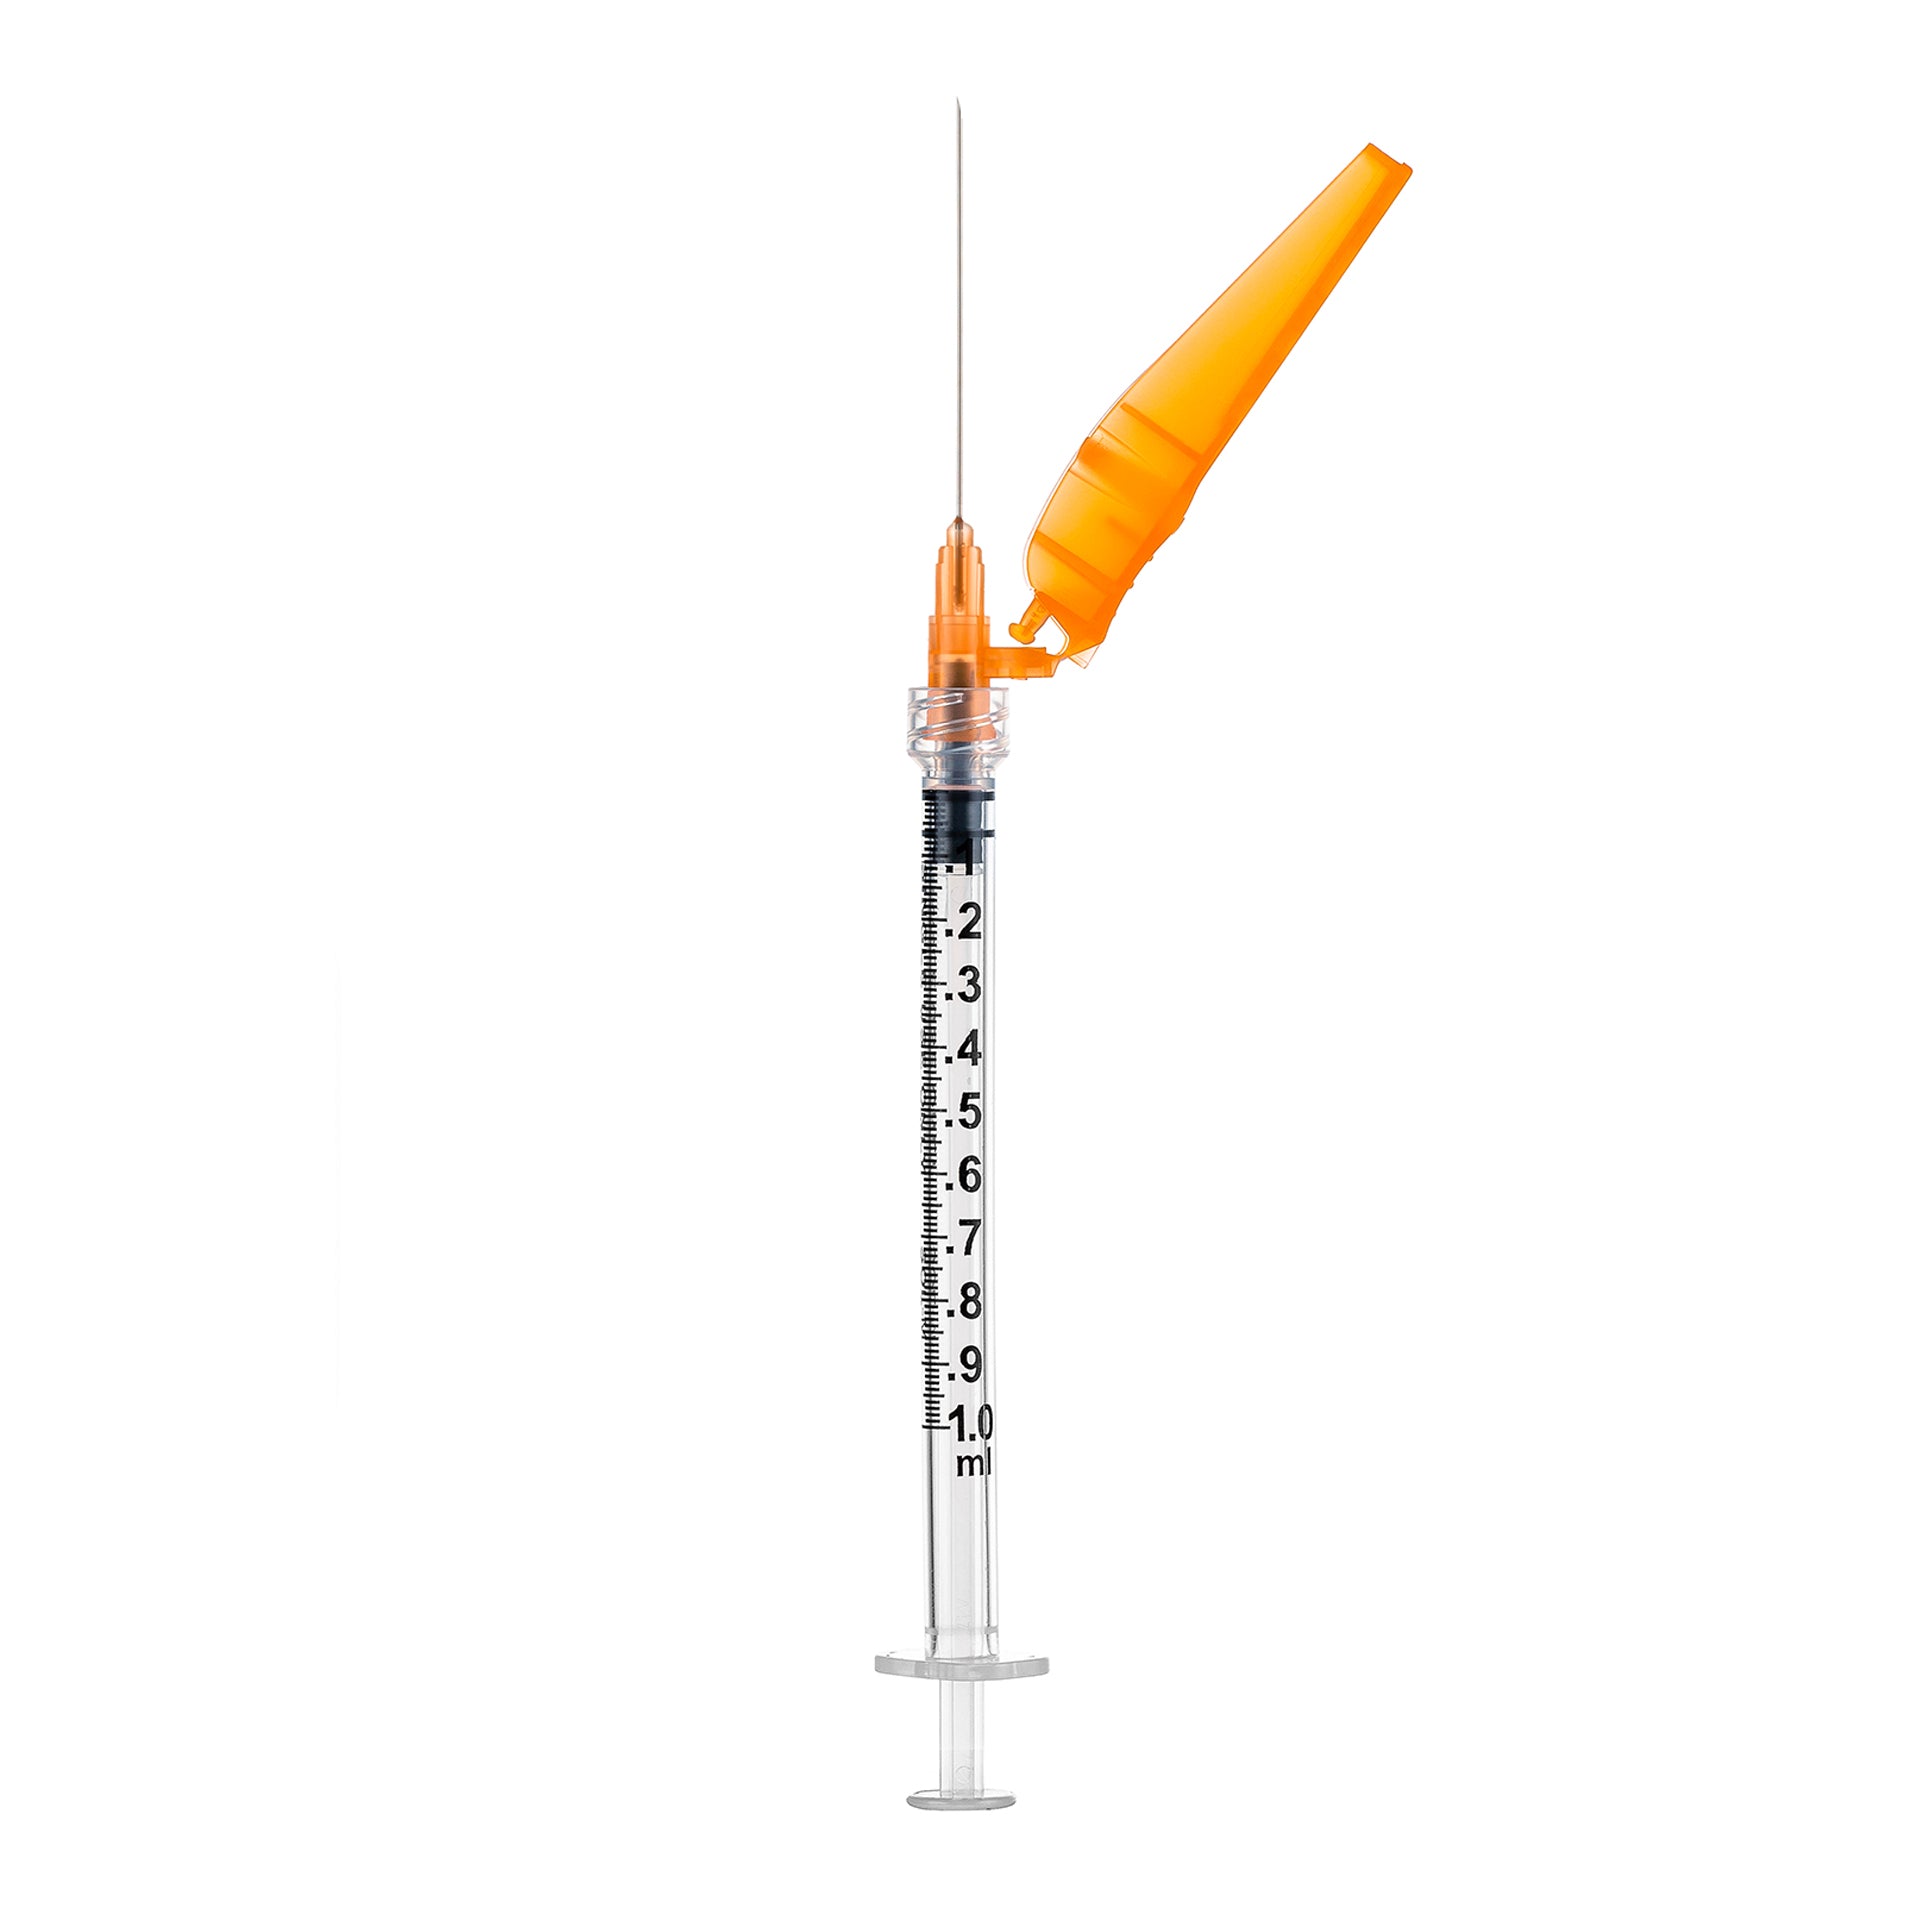 BX/50 - SOL-CARE 3ml Luer Lock Syringe w/Safety Needle 25G*5/8 (needle aside)